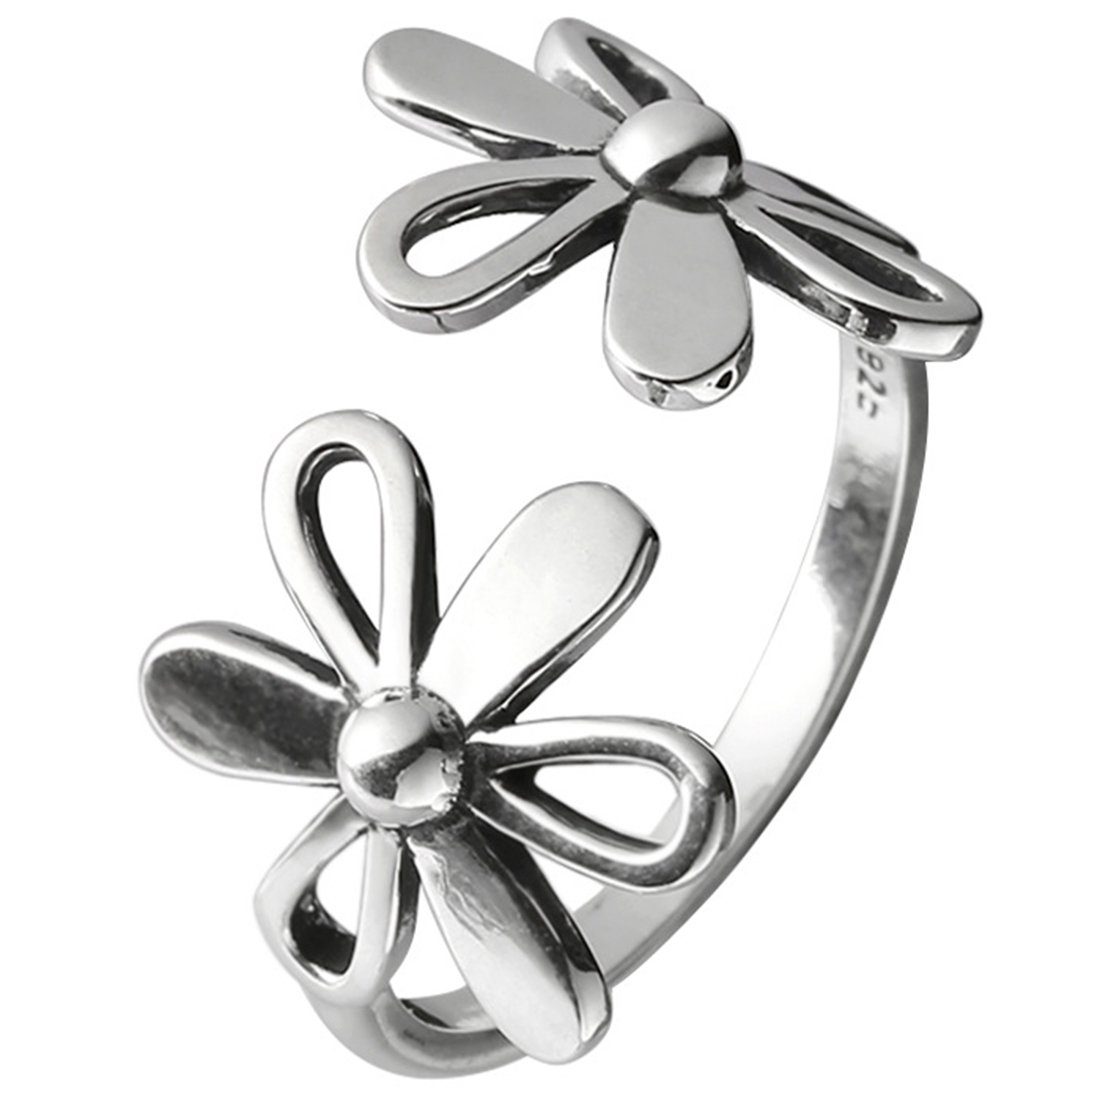 Haiaveng Fingerring s925 Sterling Silber Blumenring Ringe, Offener Vintage-Fingerring, Einstellbare Größe Ringe